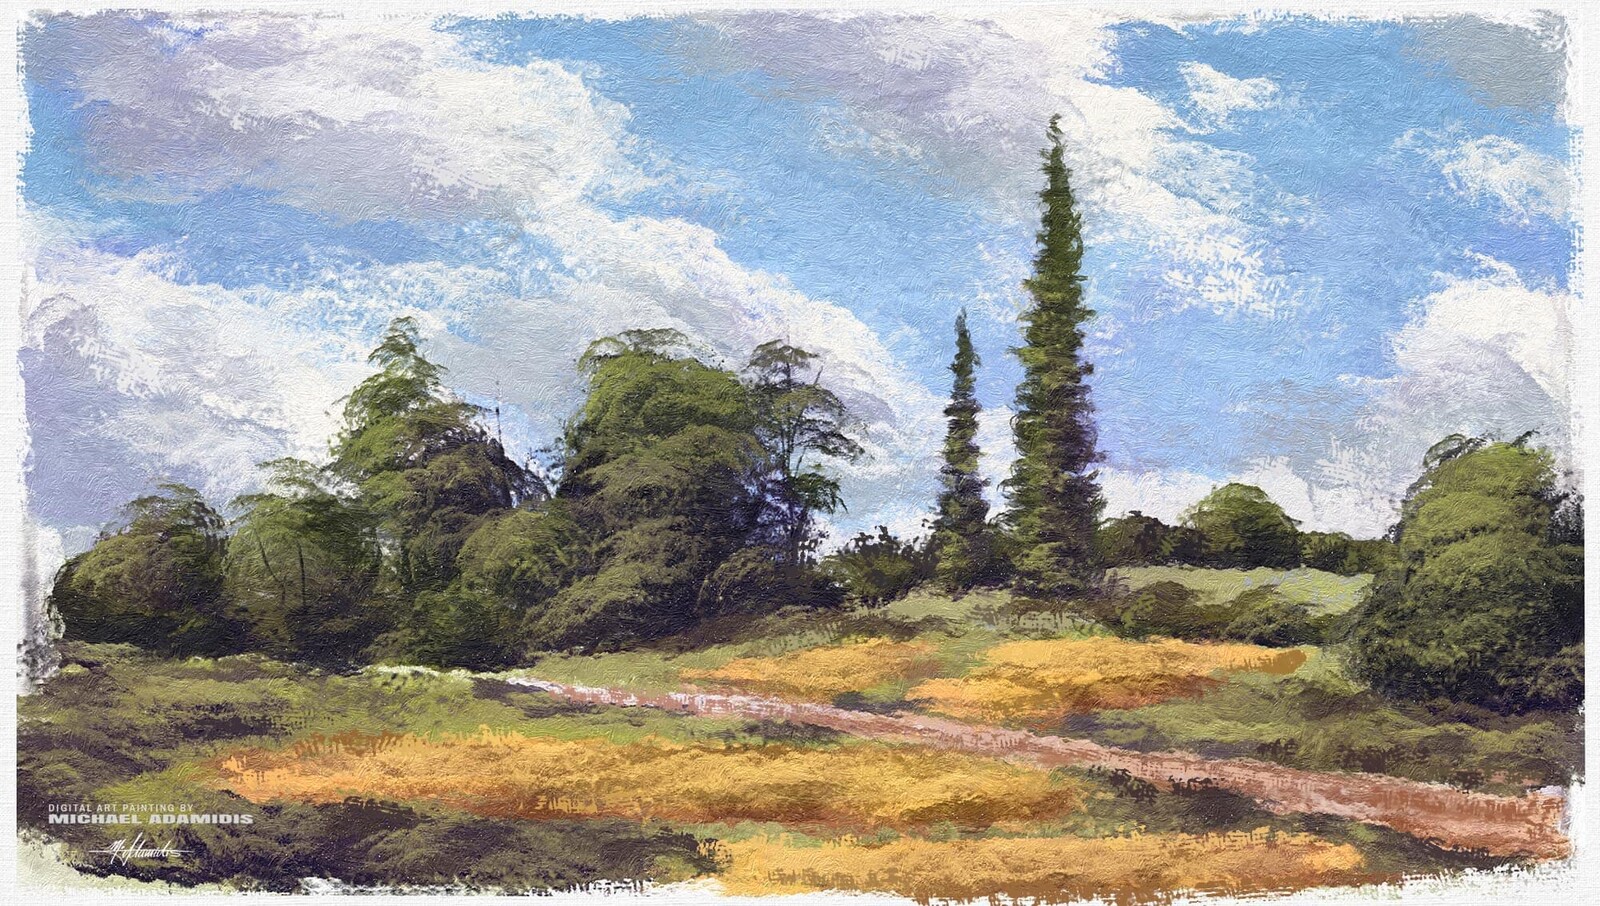 Digital Landscape / Scenery Painting - Open Fields